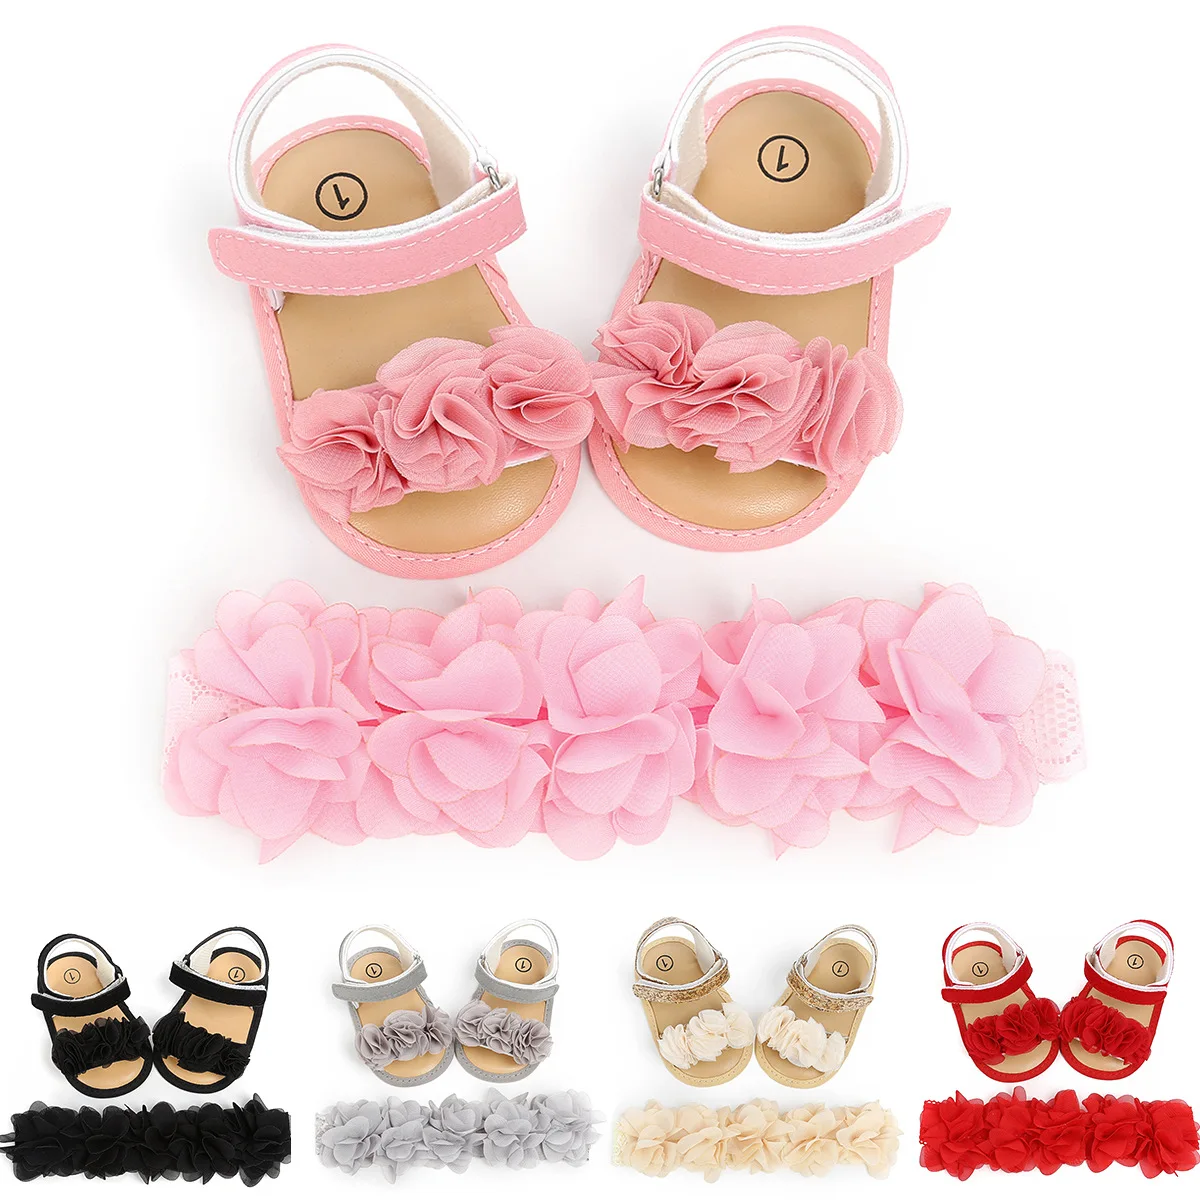 

Barefoot summer newborn infant shoes toddler flowers prewalker headband kids PU soft sole first walker baby girls sandals